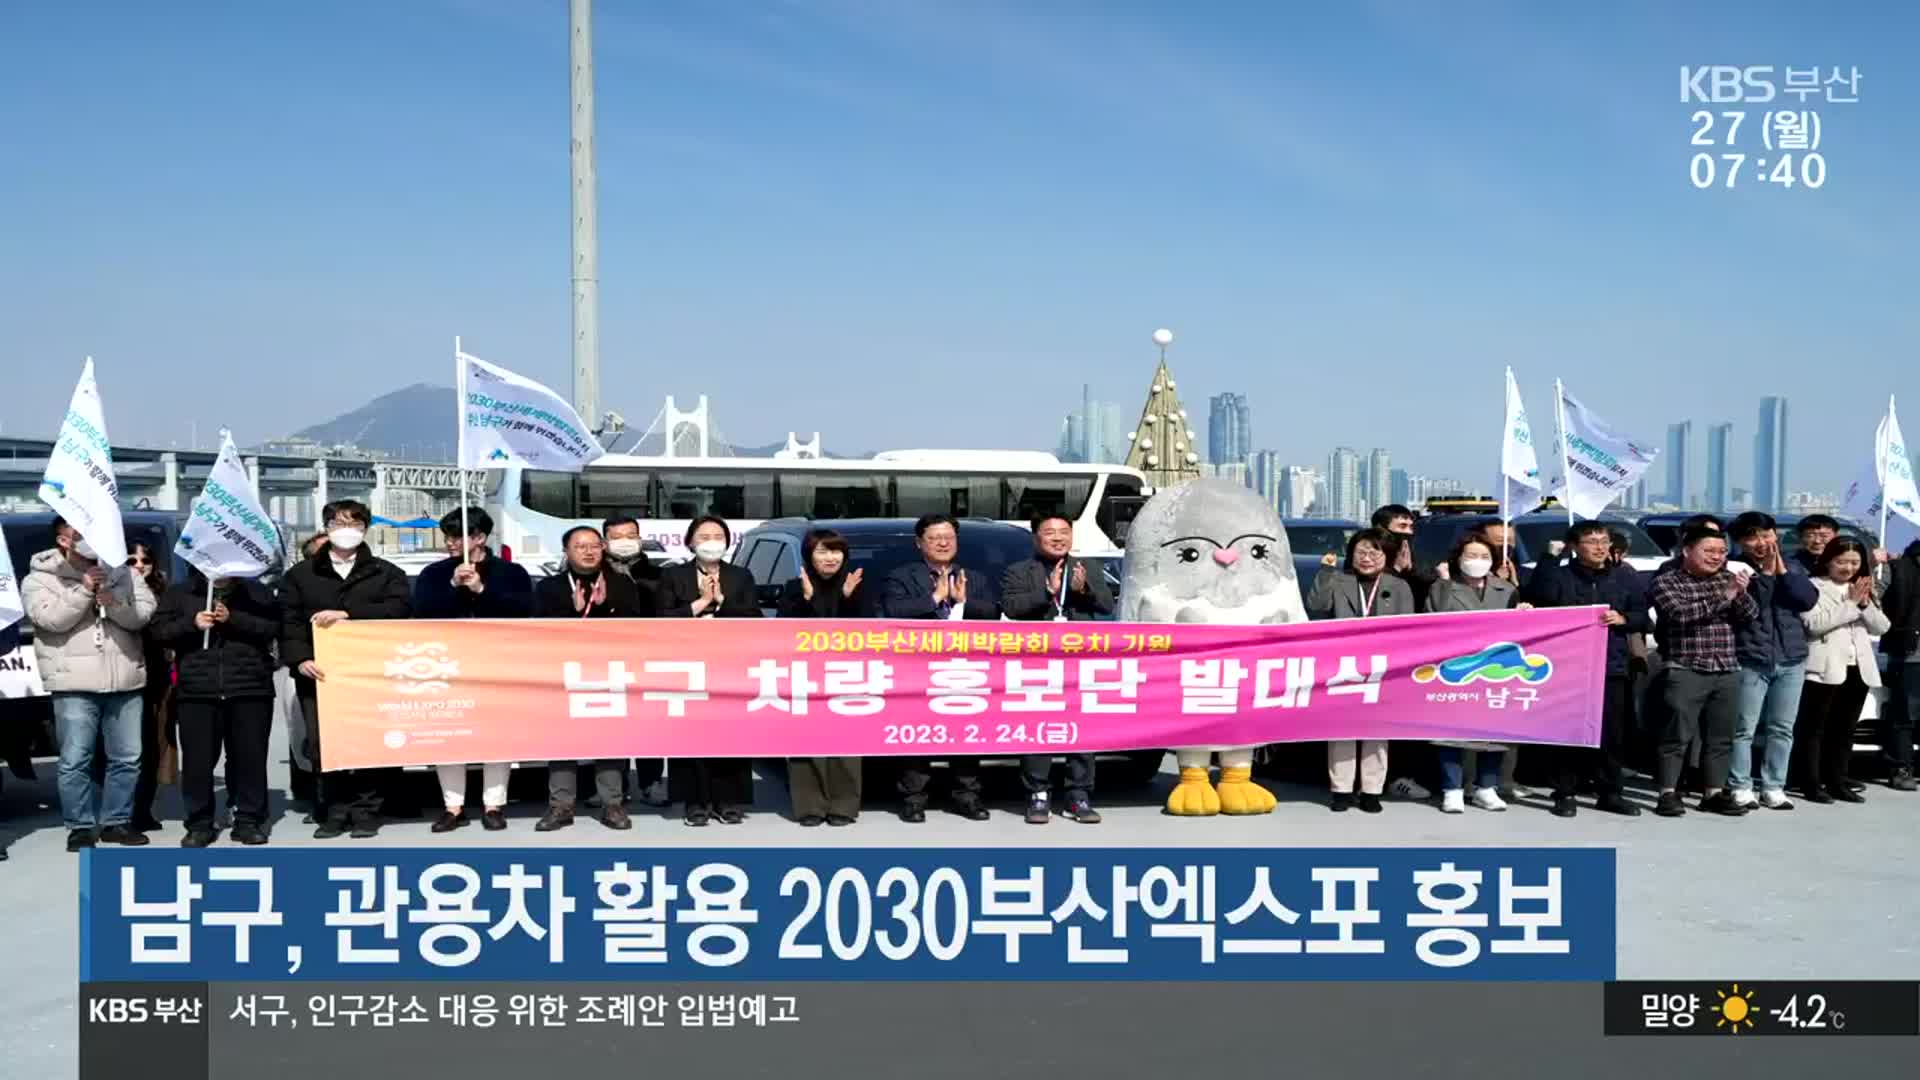 부산 남구, 관용차 활용 2030부산엑스포 홍보